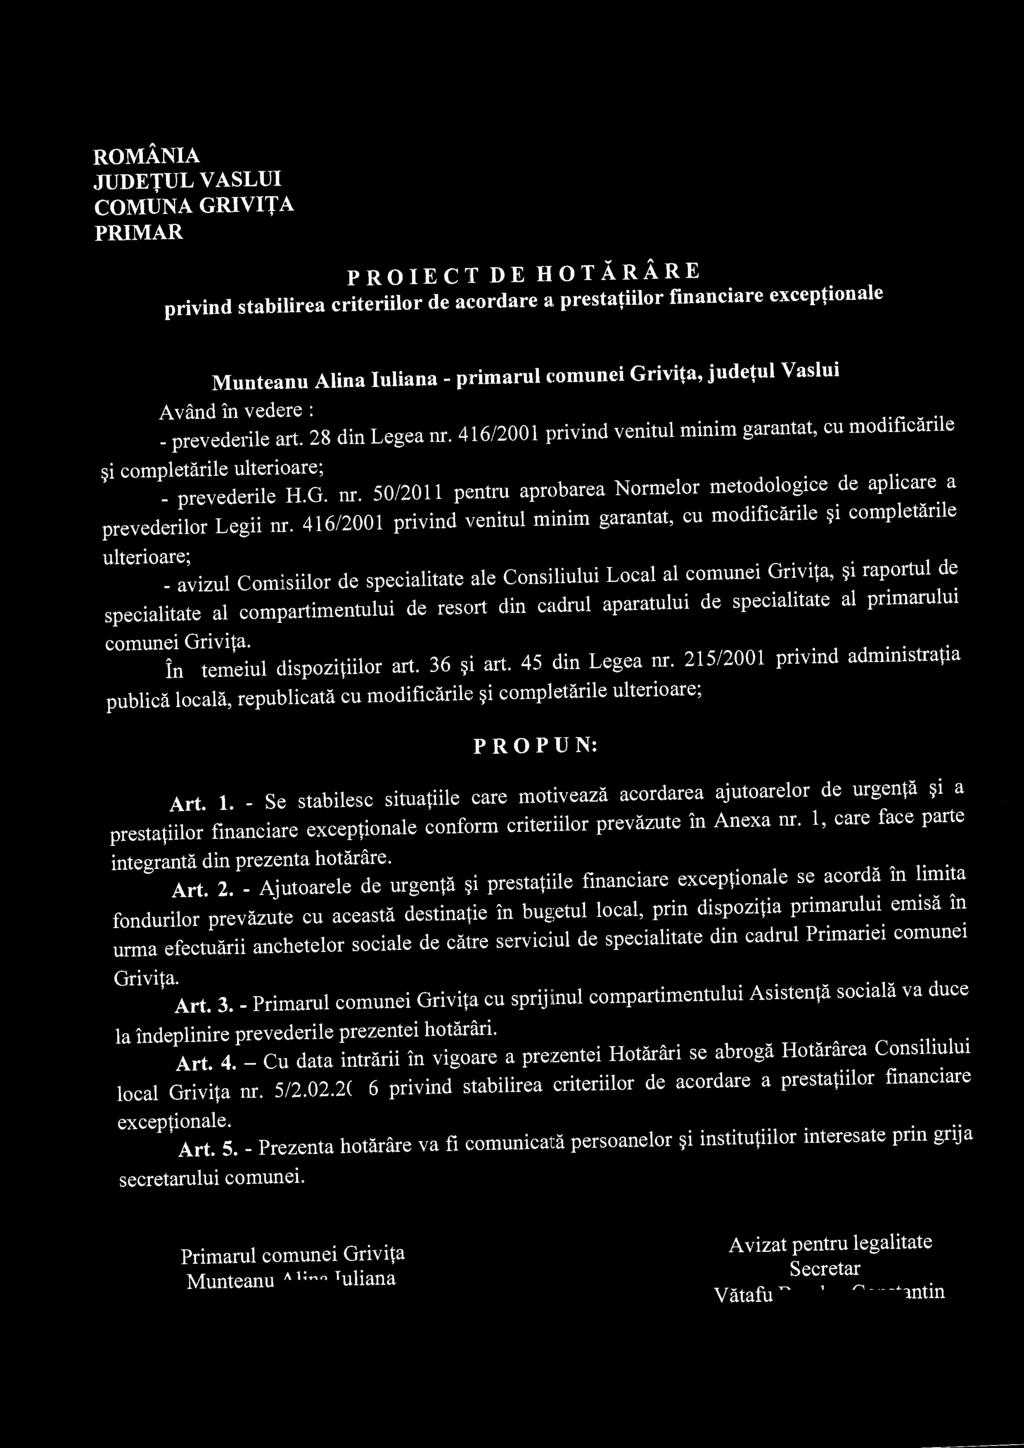 COMUNA GRIVITA PRIMAR PROIECT DE HOTARARE Munteanu Alina luliana- primarul c~omunei Grivita, judetul Vaslui A vand in vedere : - prevederile art. 28 din Legea nr.